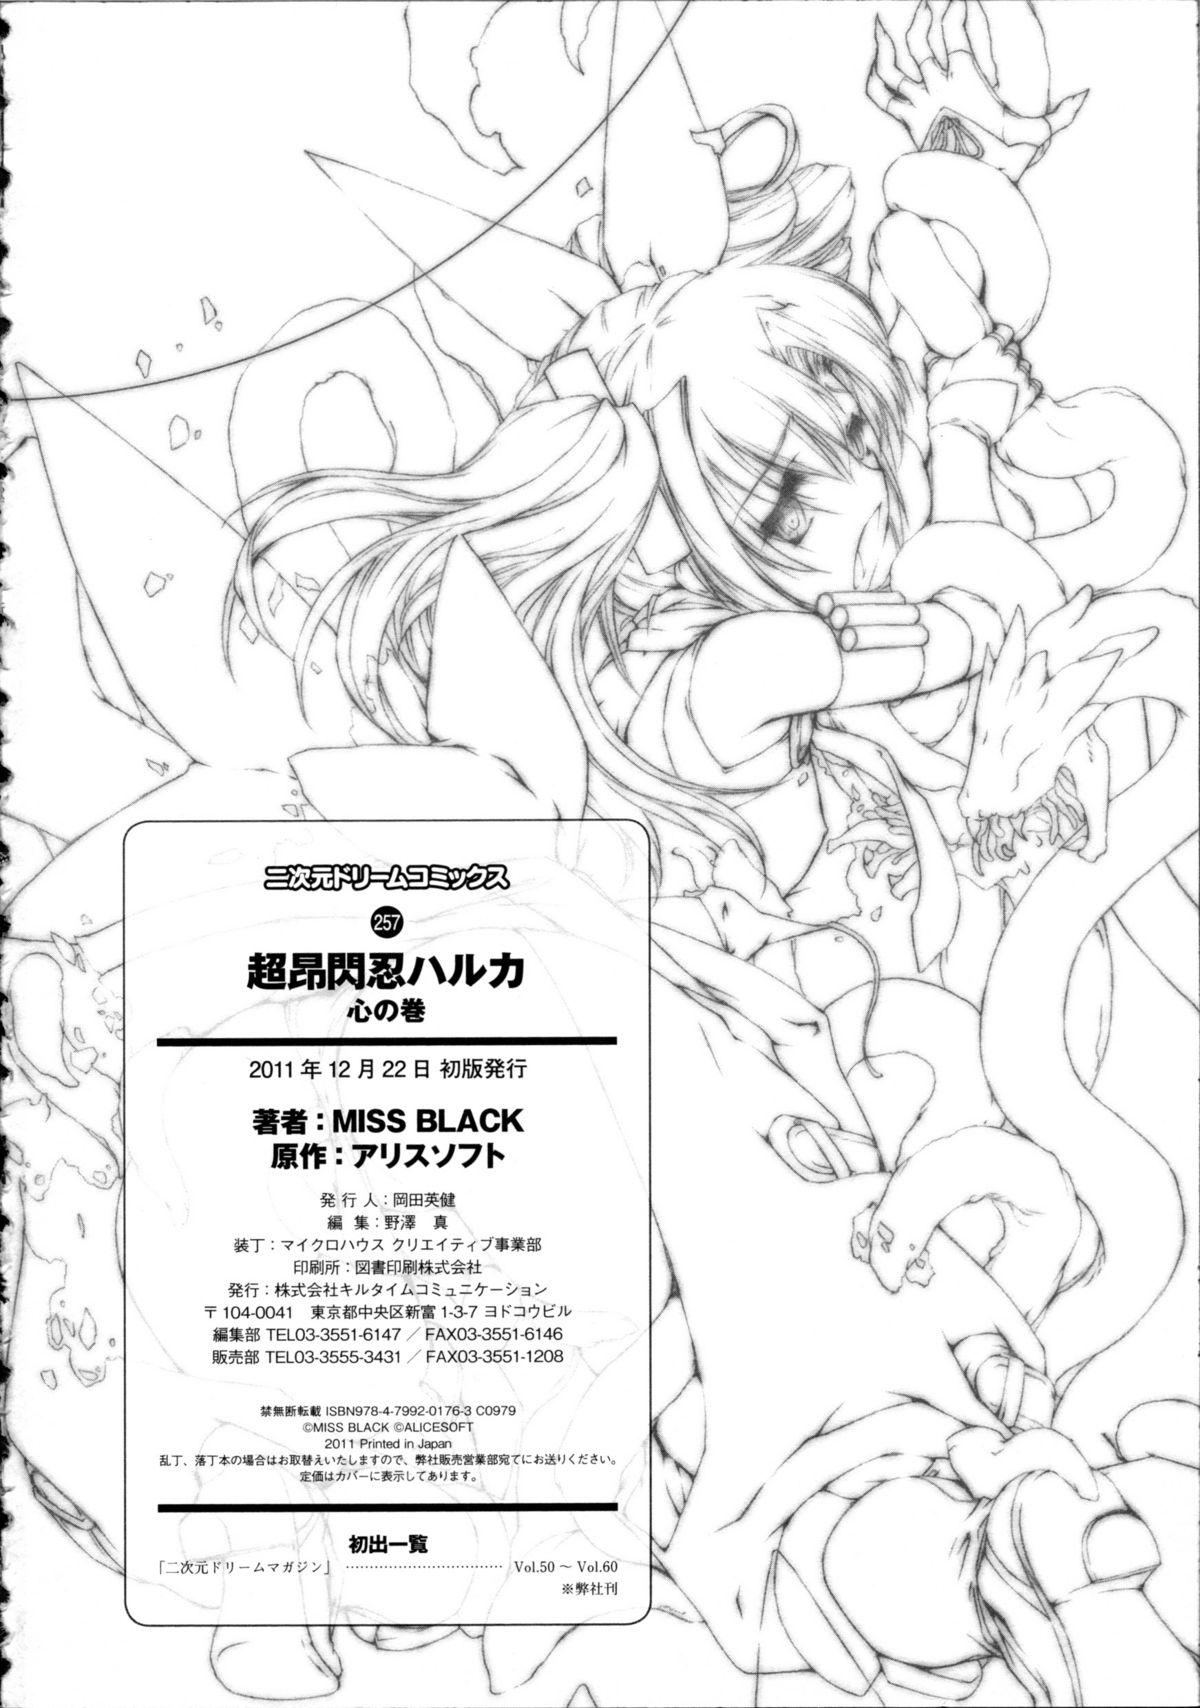 Humiliation Pov Choukou Sennin Haruka Kokoro no Maki - Beat blades haruka Rola - Page 243